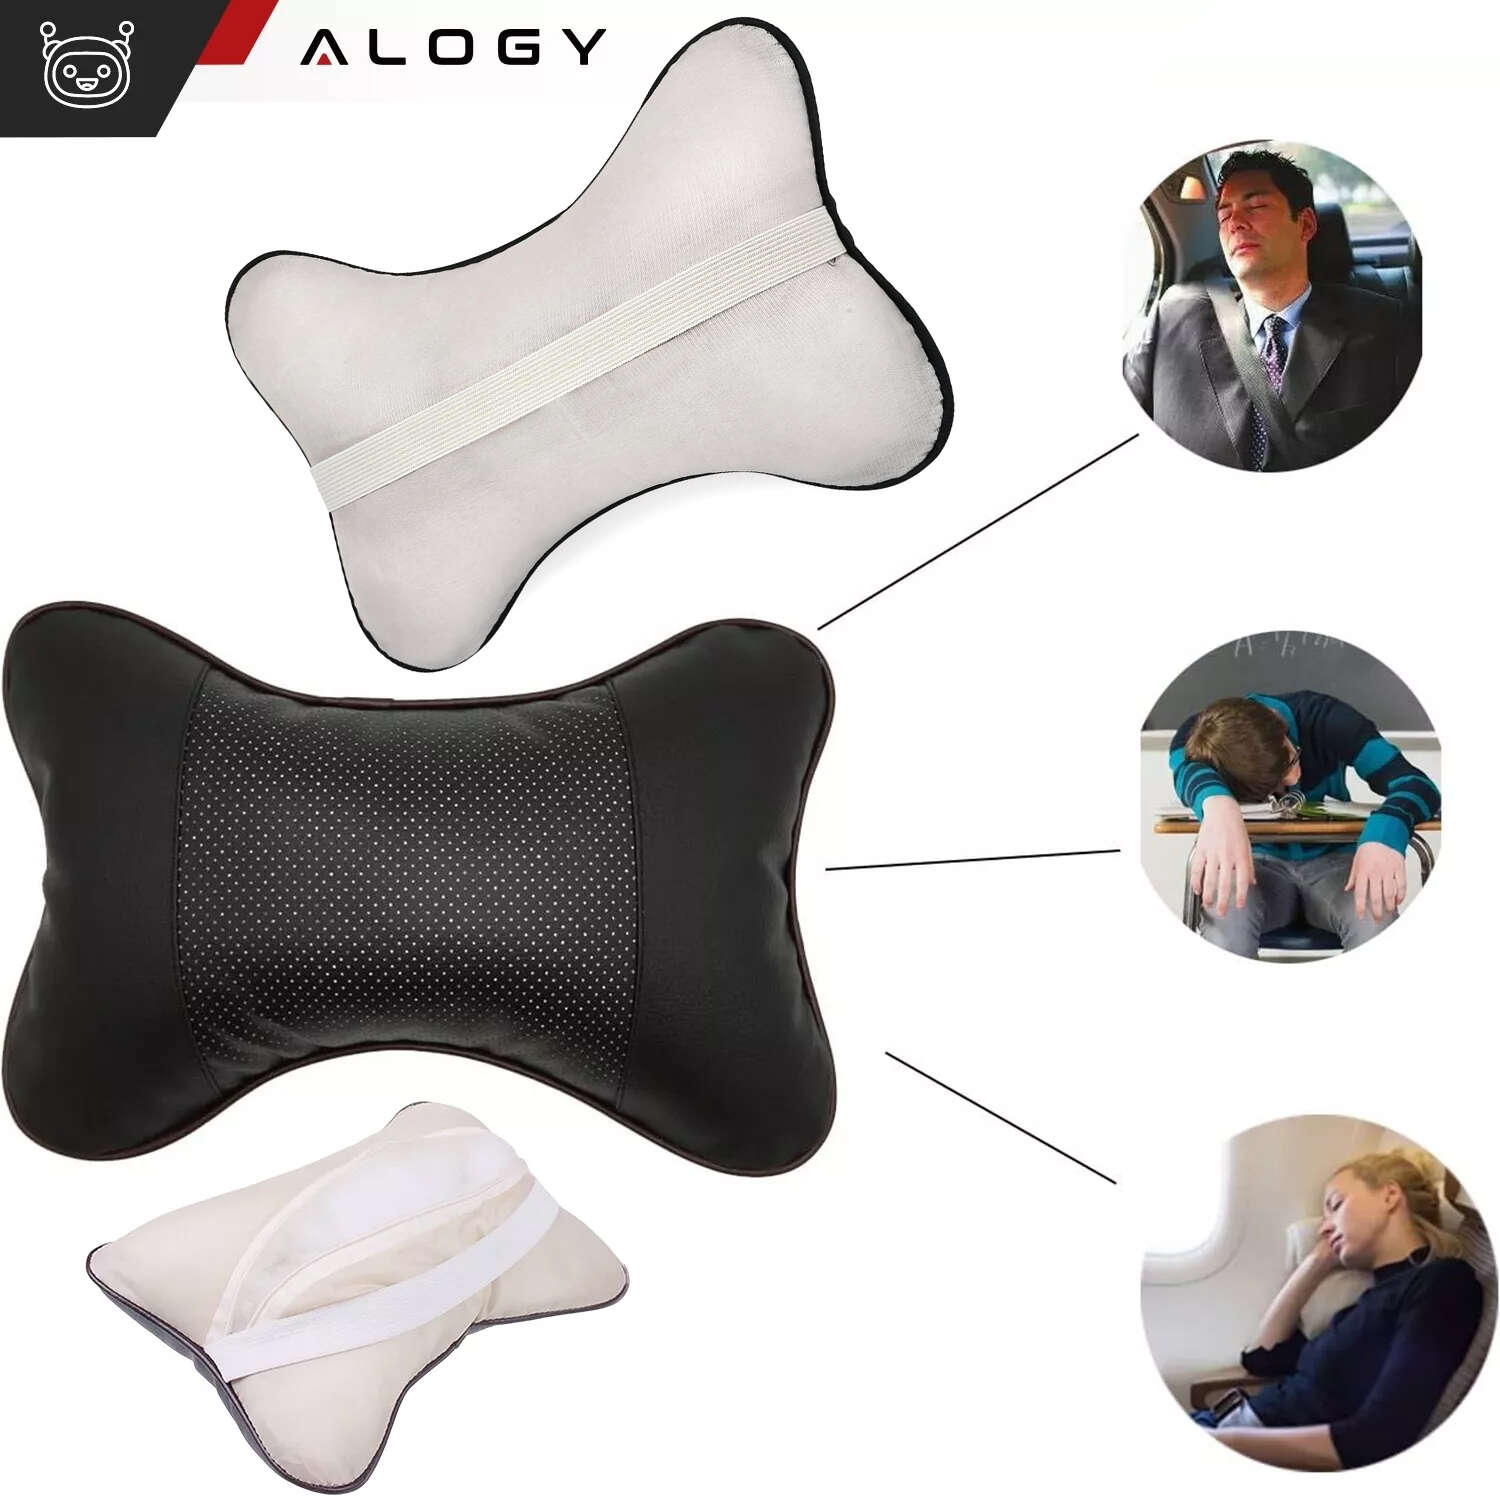 Profiliertes Auto-Nackenkissen für die Kopfstütze des Autos, bequemes  weiches Öko-Leder Alogy Black